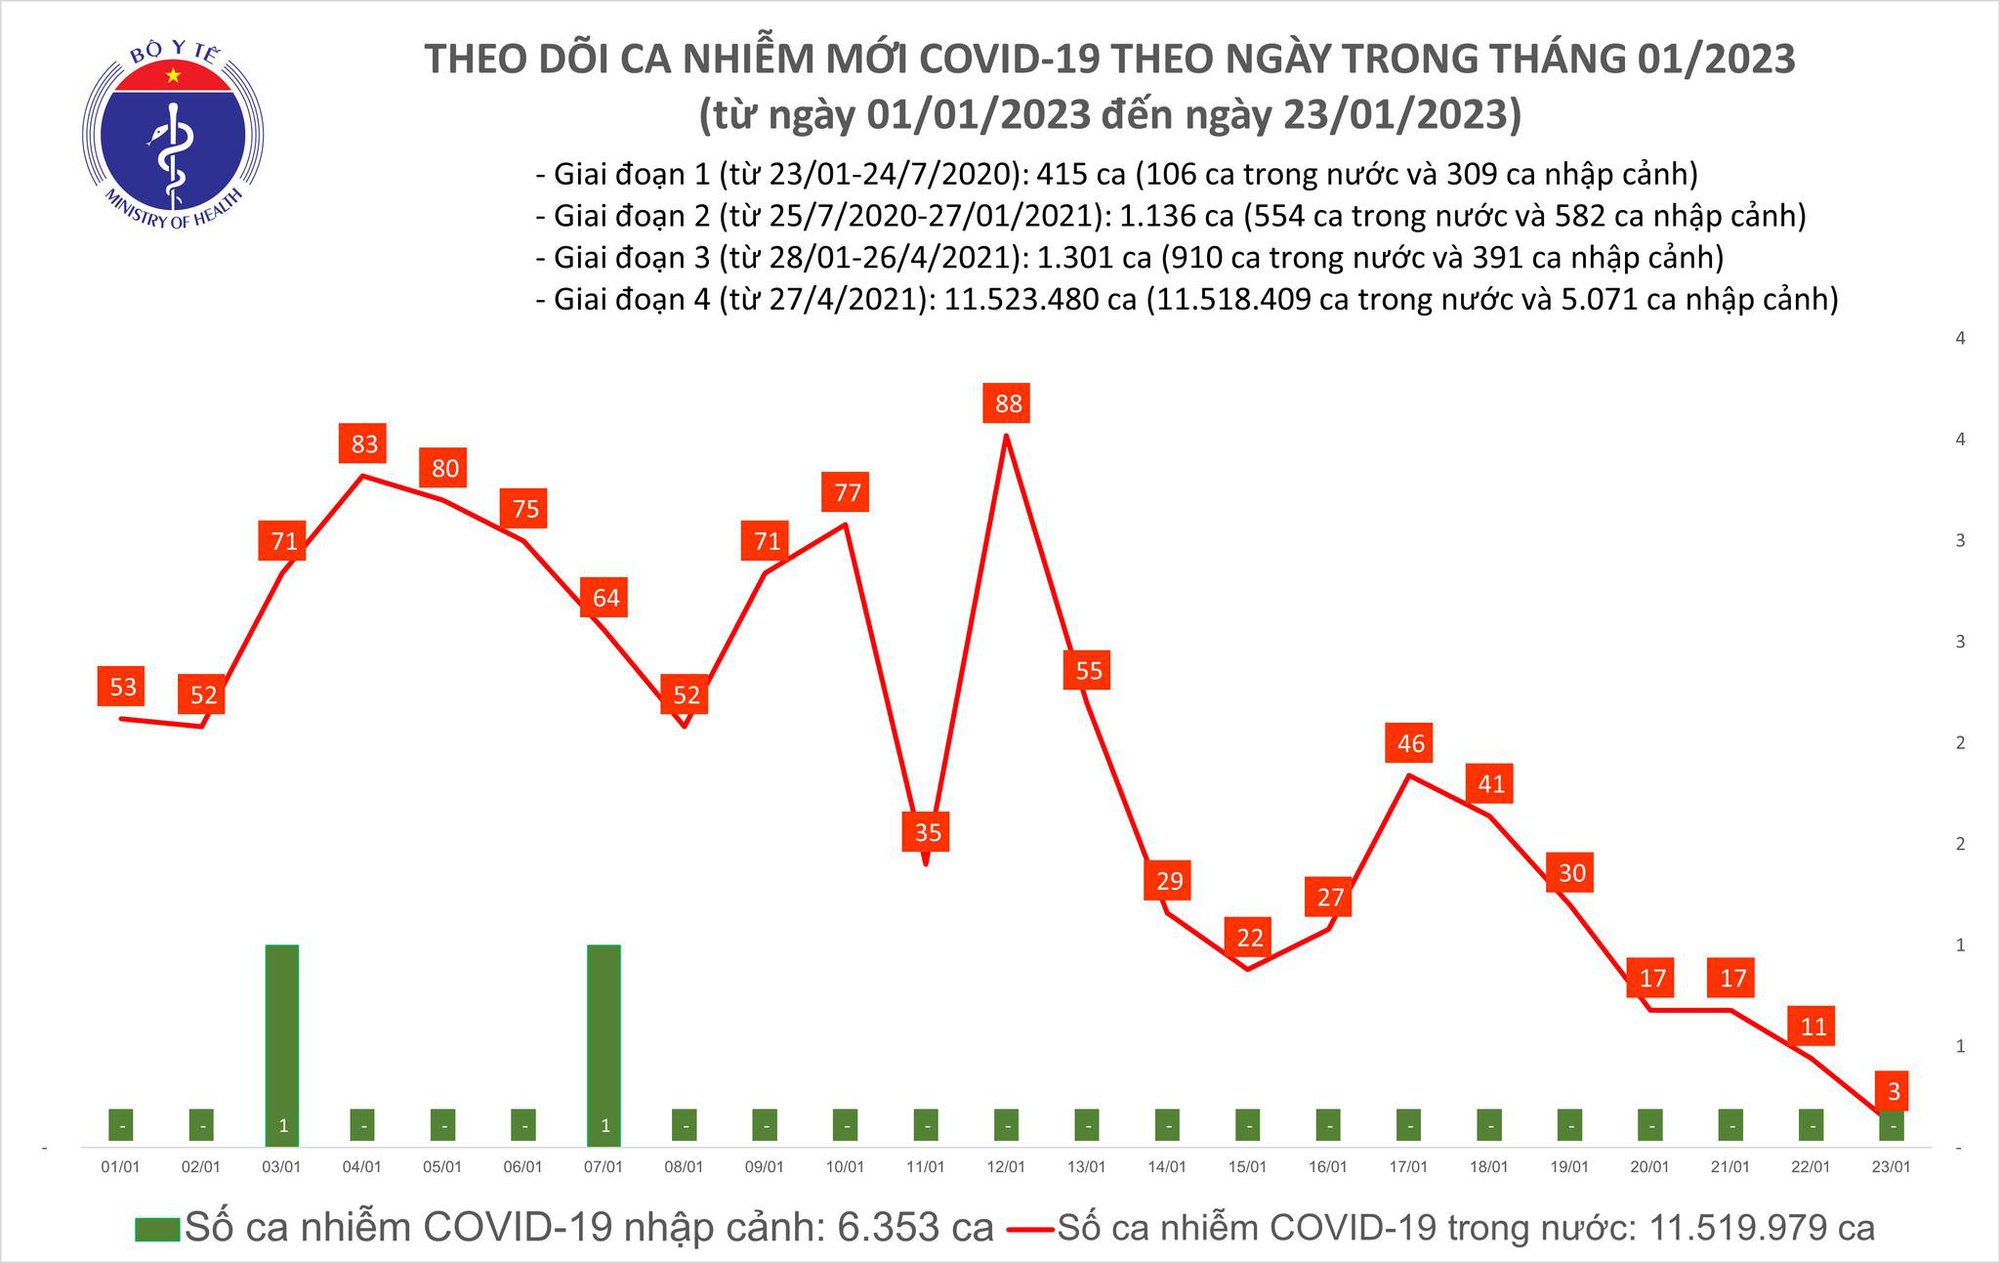 Mùng 2 Tết Quý Mão: Việt Nam chỉ có 3 ca COVID-19, thấp nhất trong hơn 2 năm qua - Ảnh 1.